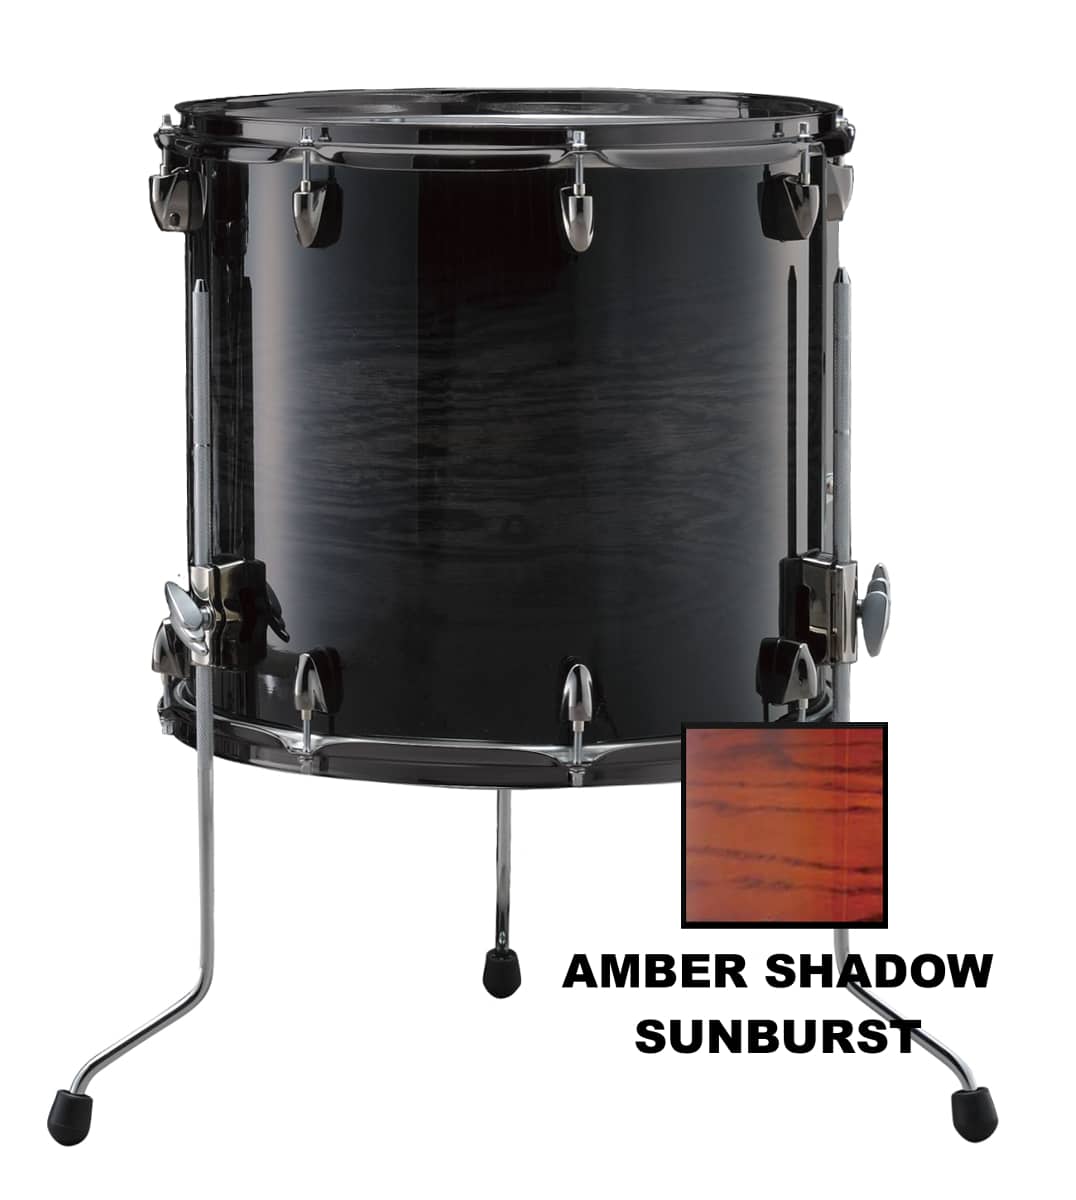 Lnf1413 - 14 X 13 - Amber Shadow Sunburst pour 409